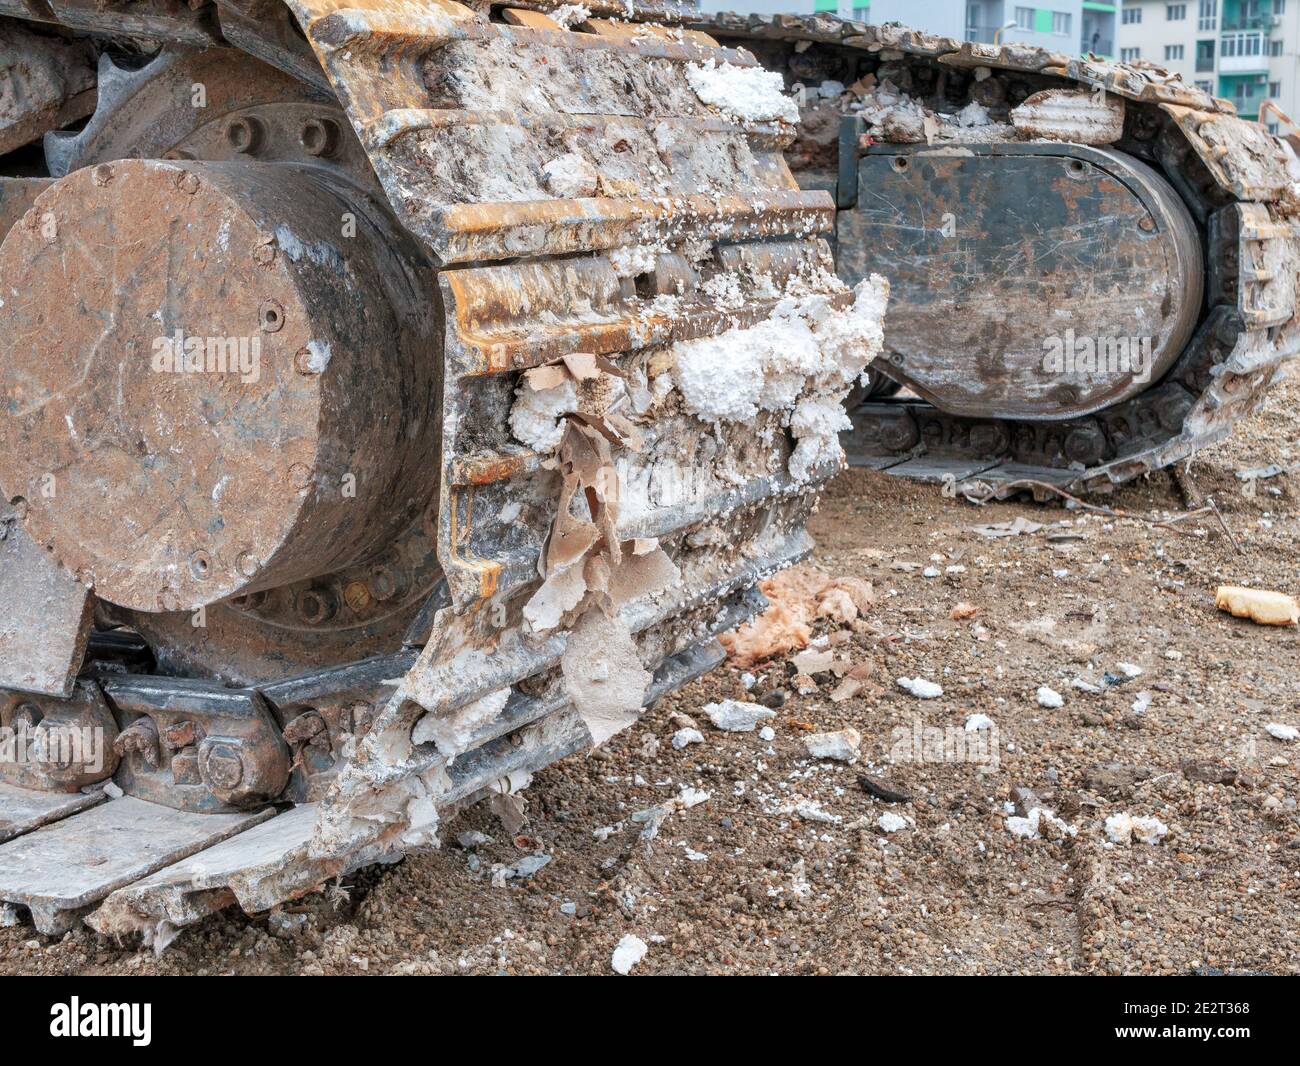 Gros plan avec les chaînes d'un bulldozer un site de démolition Banque D'Images